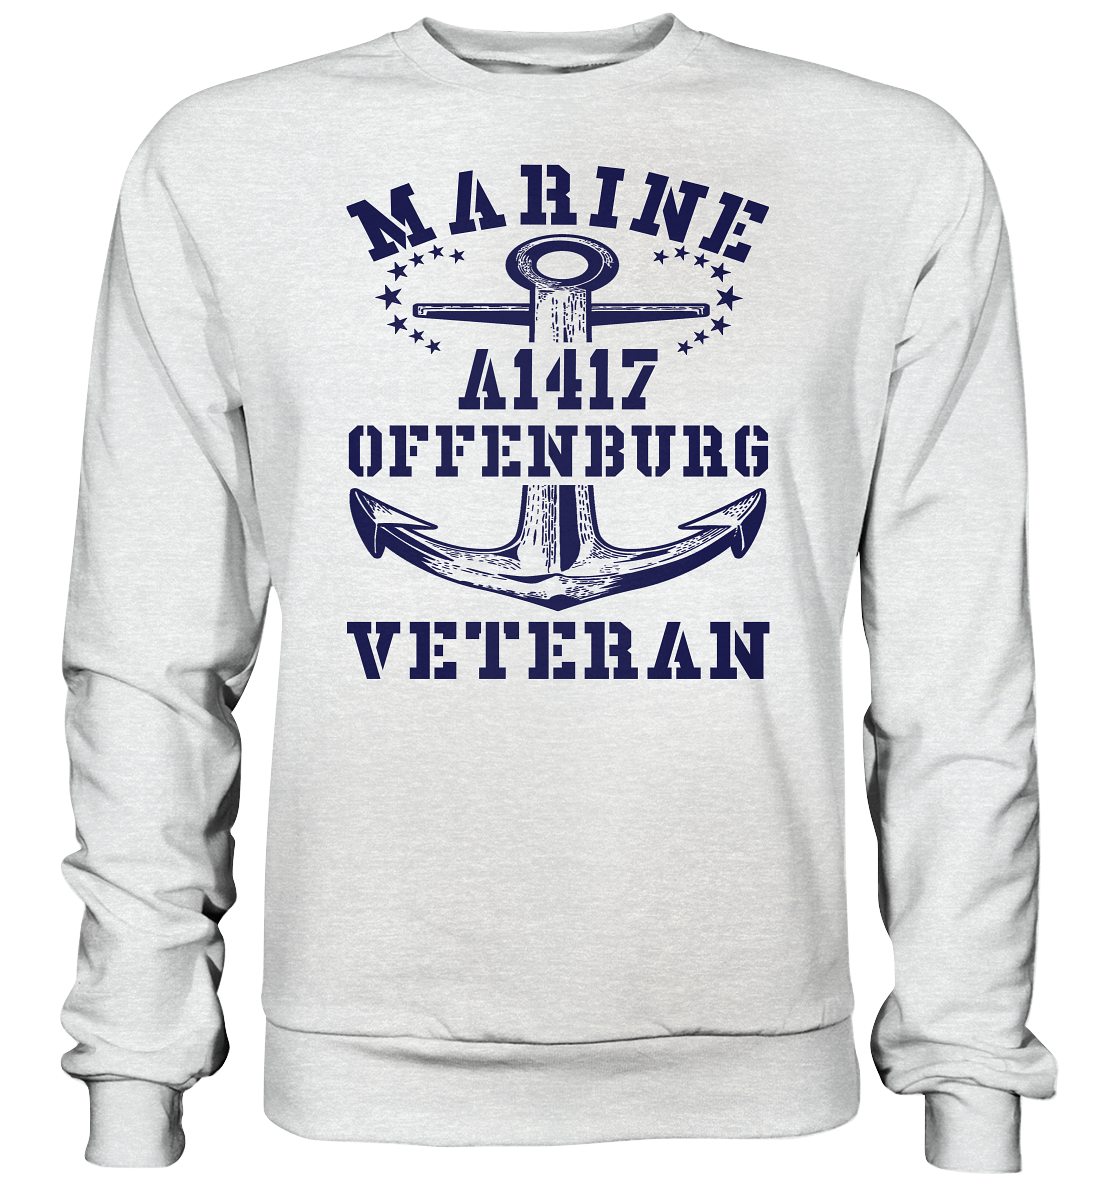 Troßschiff A1418 MEERSBURG Marine Veteran - Premium Sweatshirt